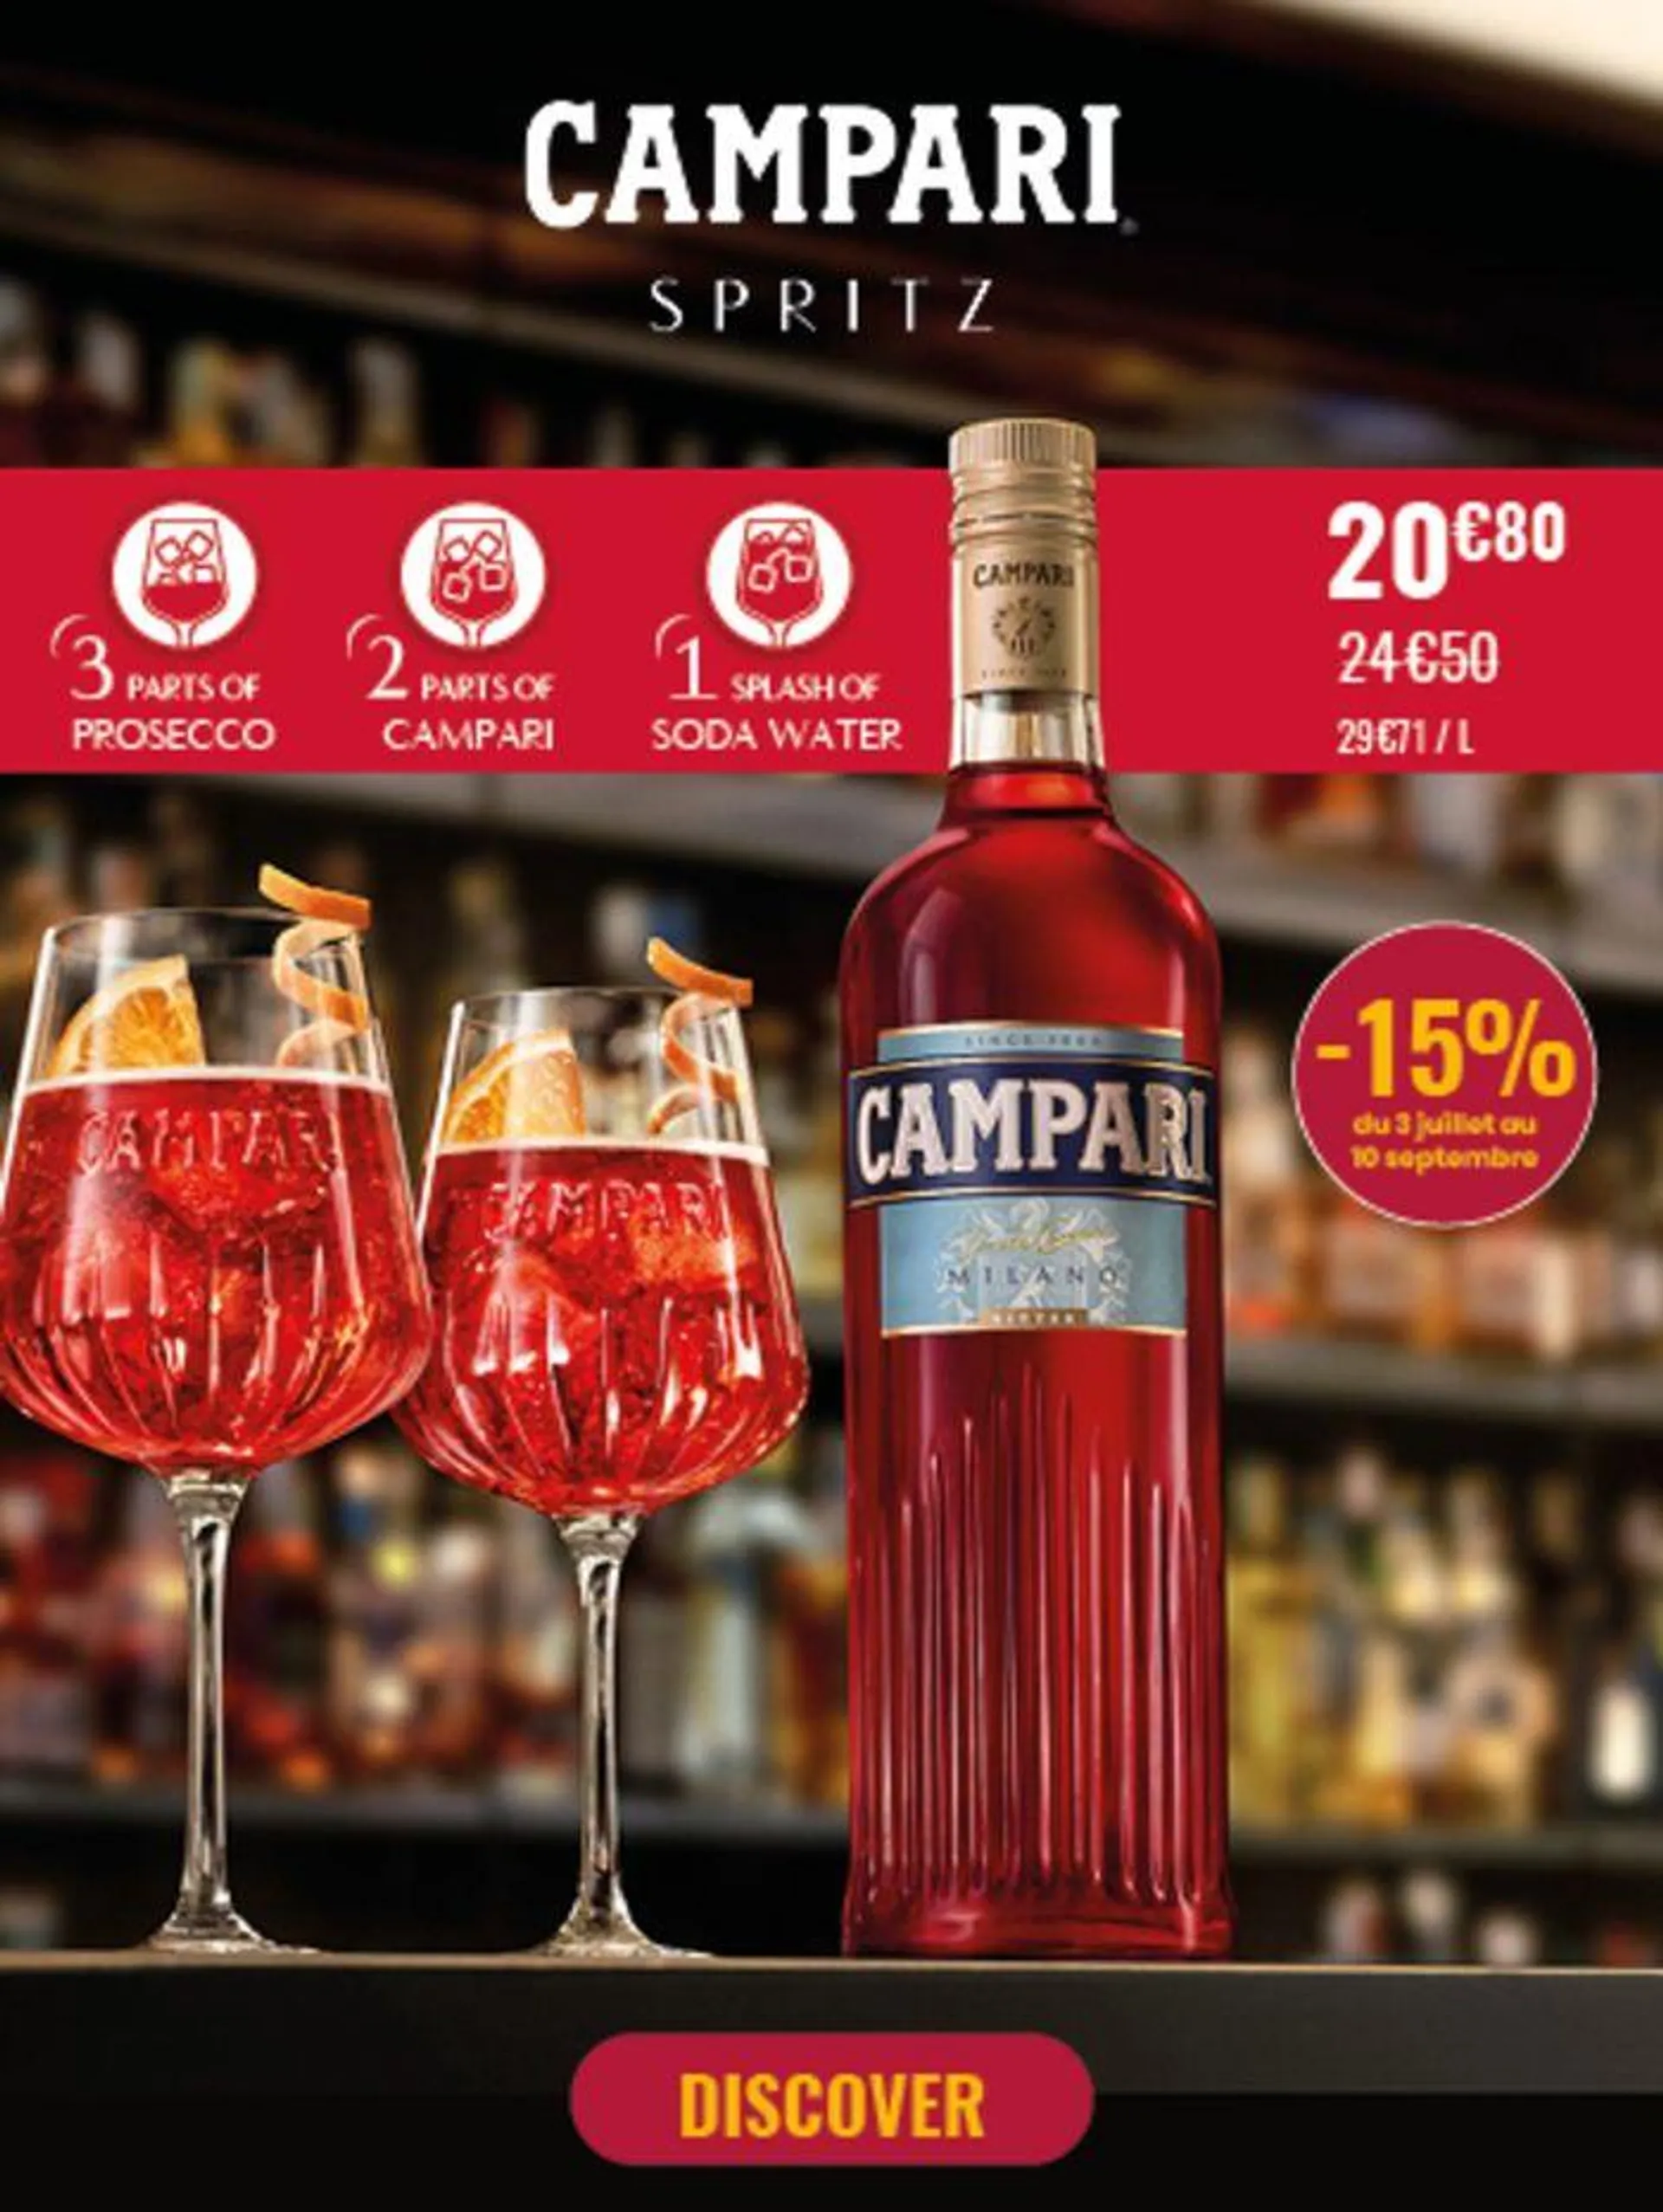 Campari Spritz - 1